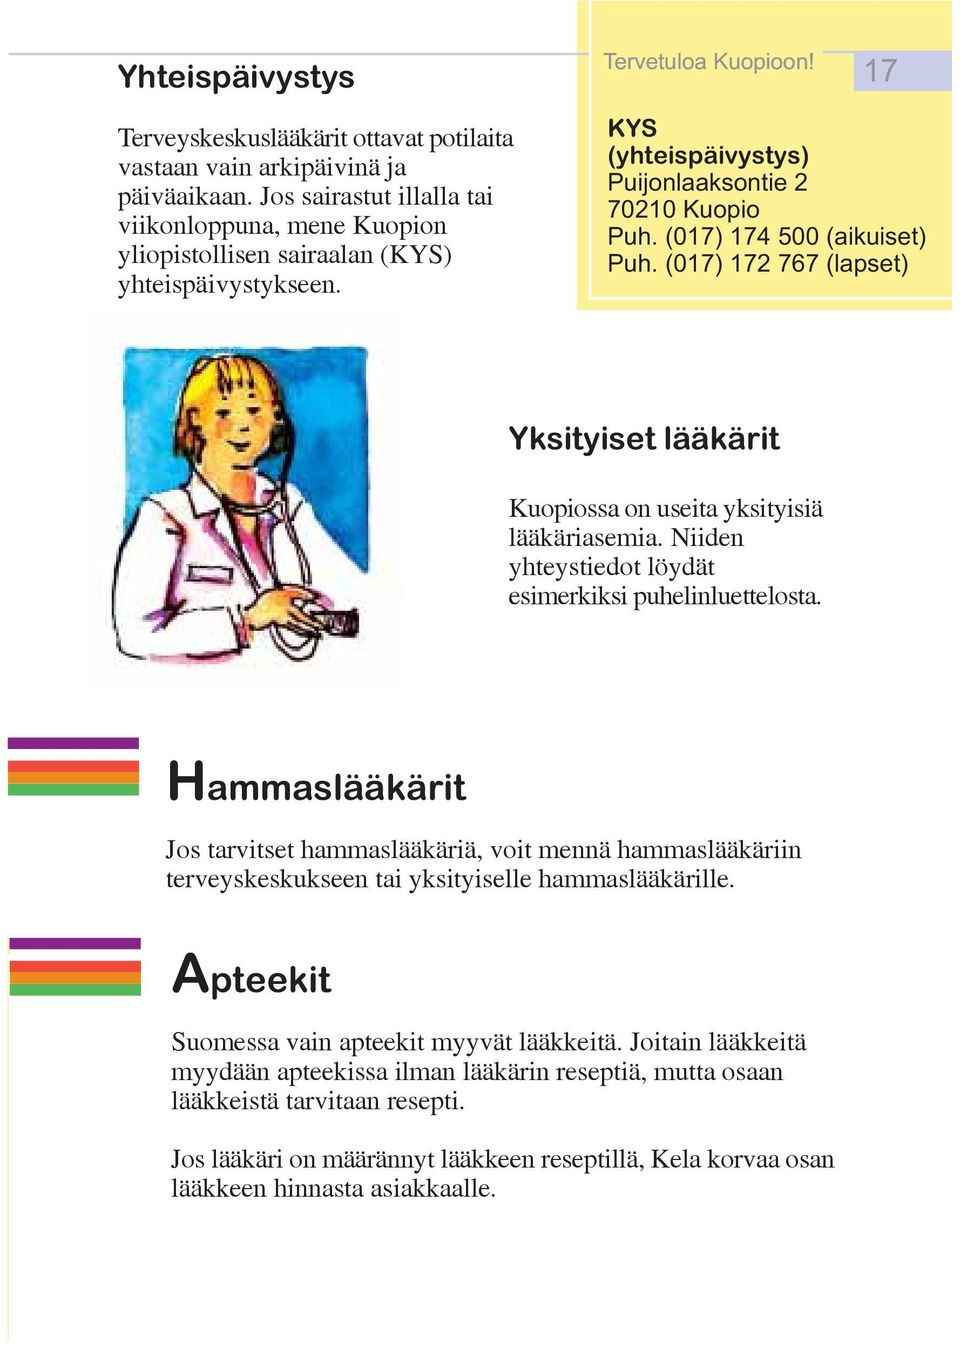 (07) 7 767 (lapset) Yksityiset lääkärit Kuopiossa on useita yksityisiä lääkäriasemia. Niiden yhteystiedot löydät esimerkiksi puhelinluettelosta.